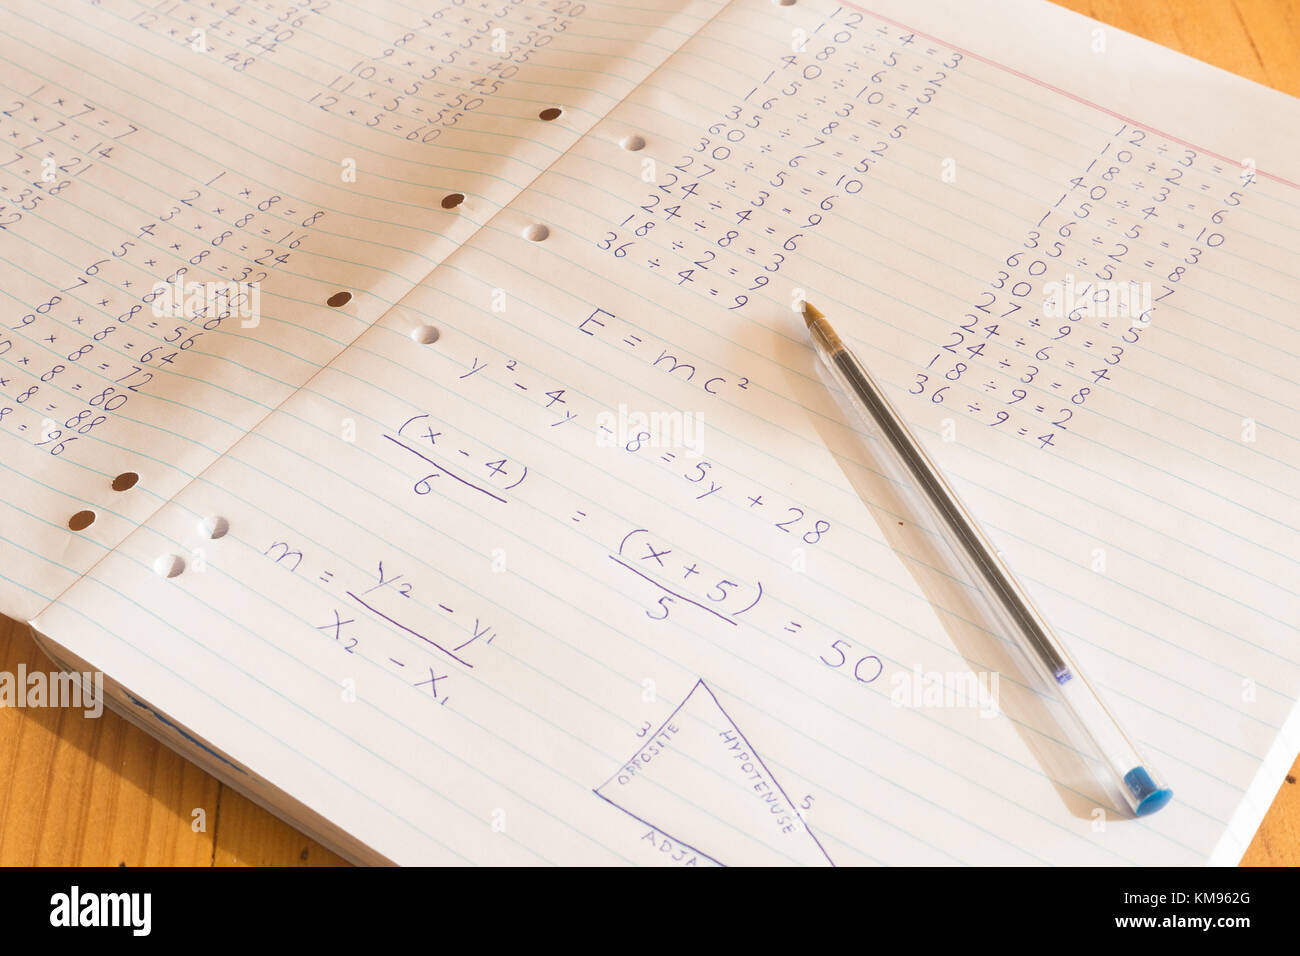 Somme matematiche scritte su carta di pad con penna Foto Stock